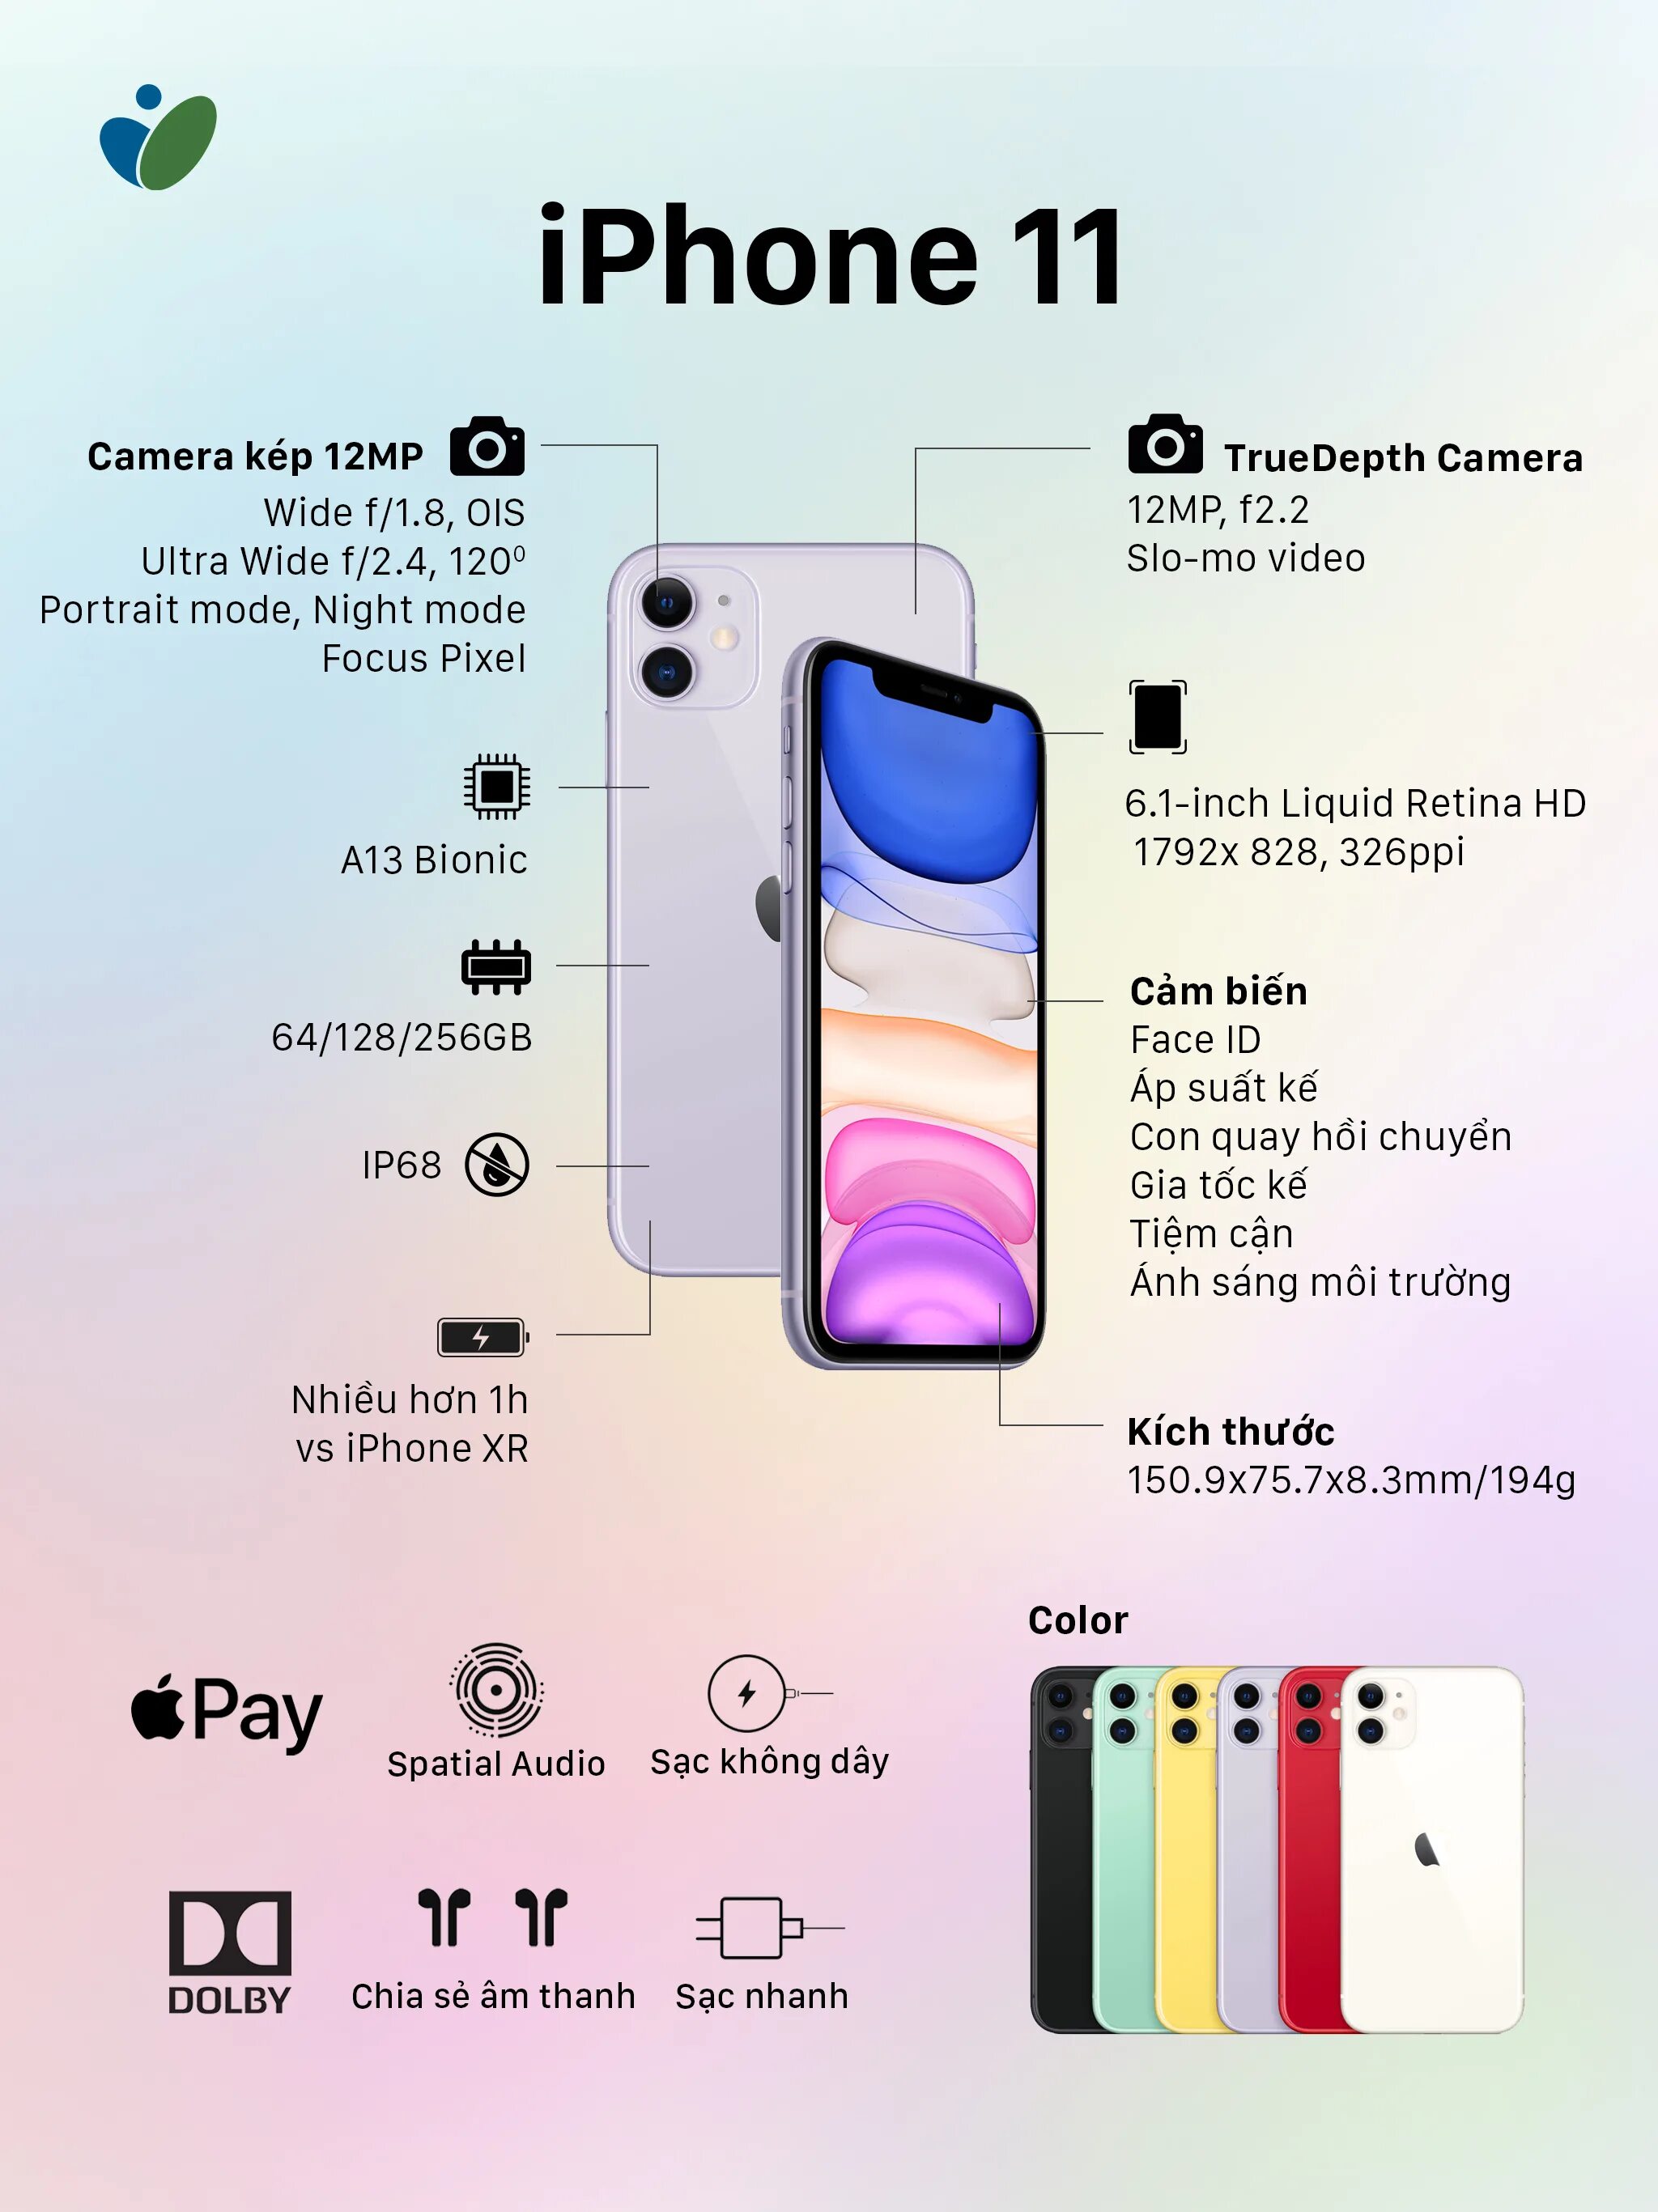 Iphone 12 сколько аккумулятор. Айфон 11 Pro Max камера мегапикселей. Айфон 11 про Макс камера МП. Iphone 11 камера мегапикселей. Айфон 11 характеристики камеры.